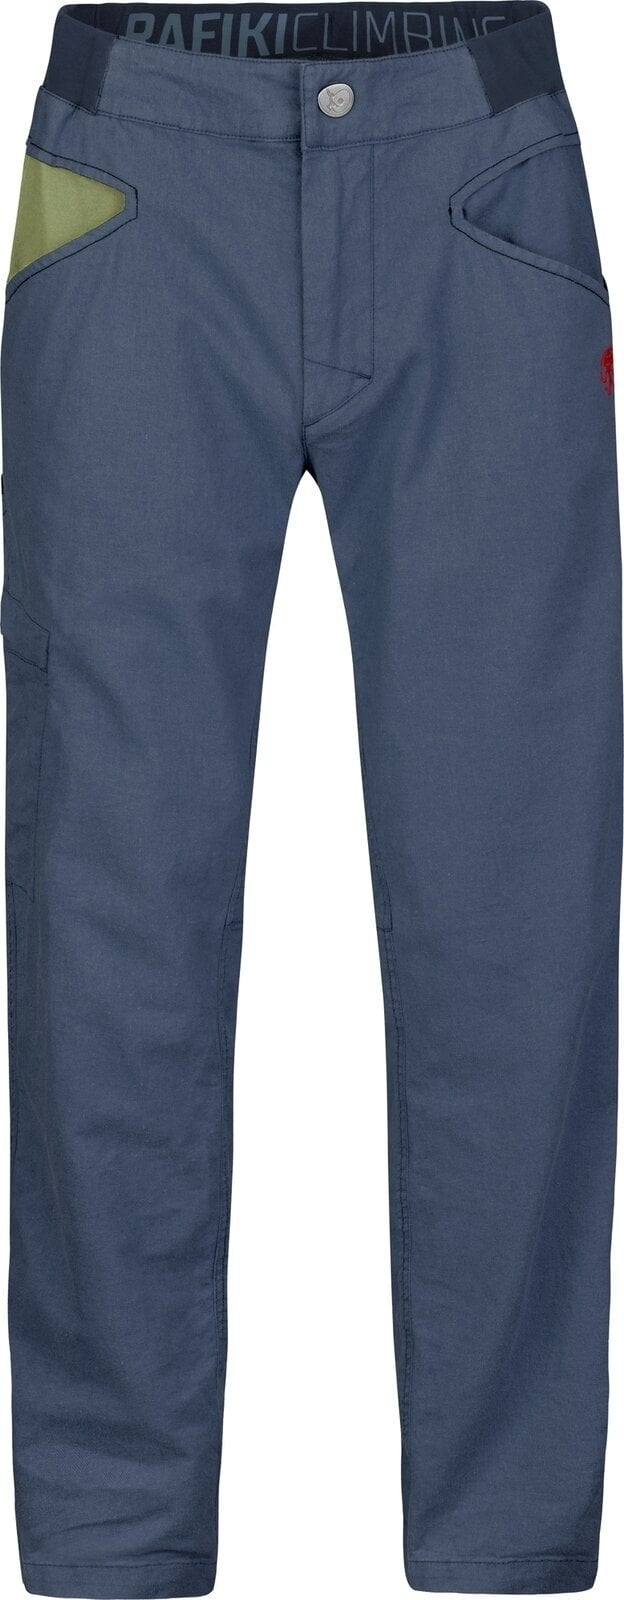 Pantaloni outdoor Rafiki Grip Man Pants India Ink XL Pantaloni outdoor